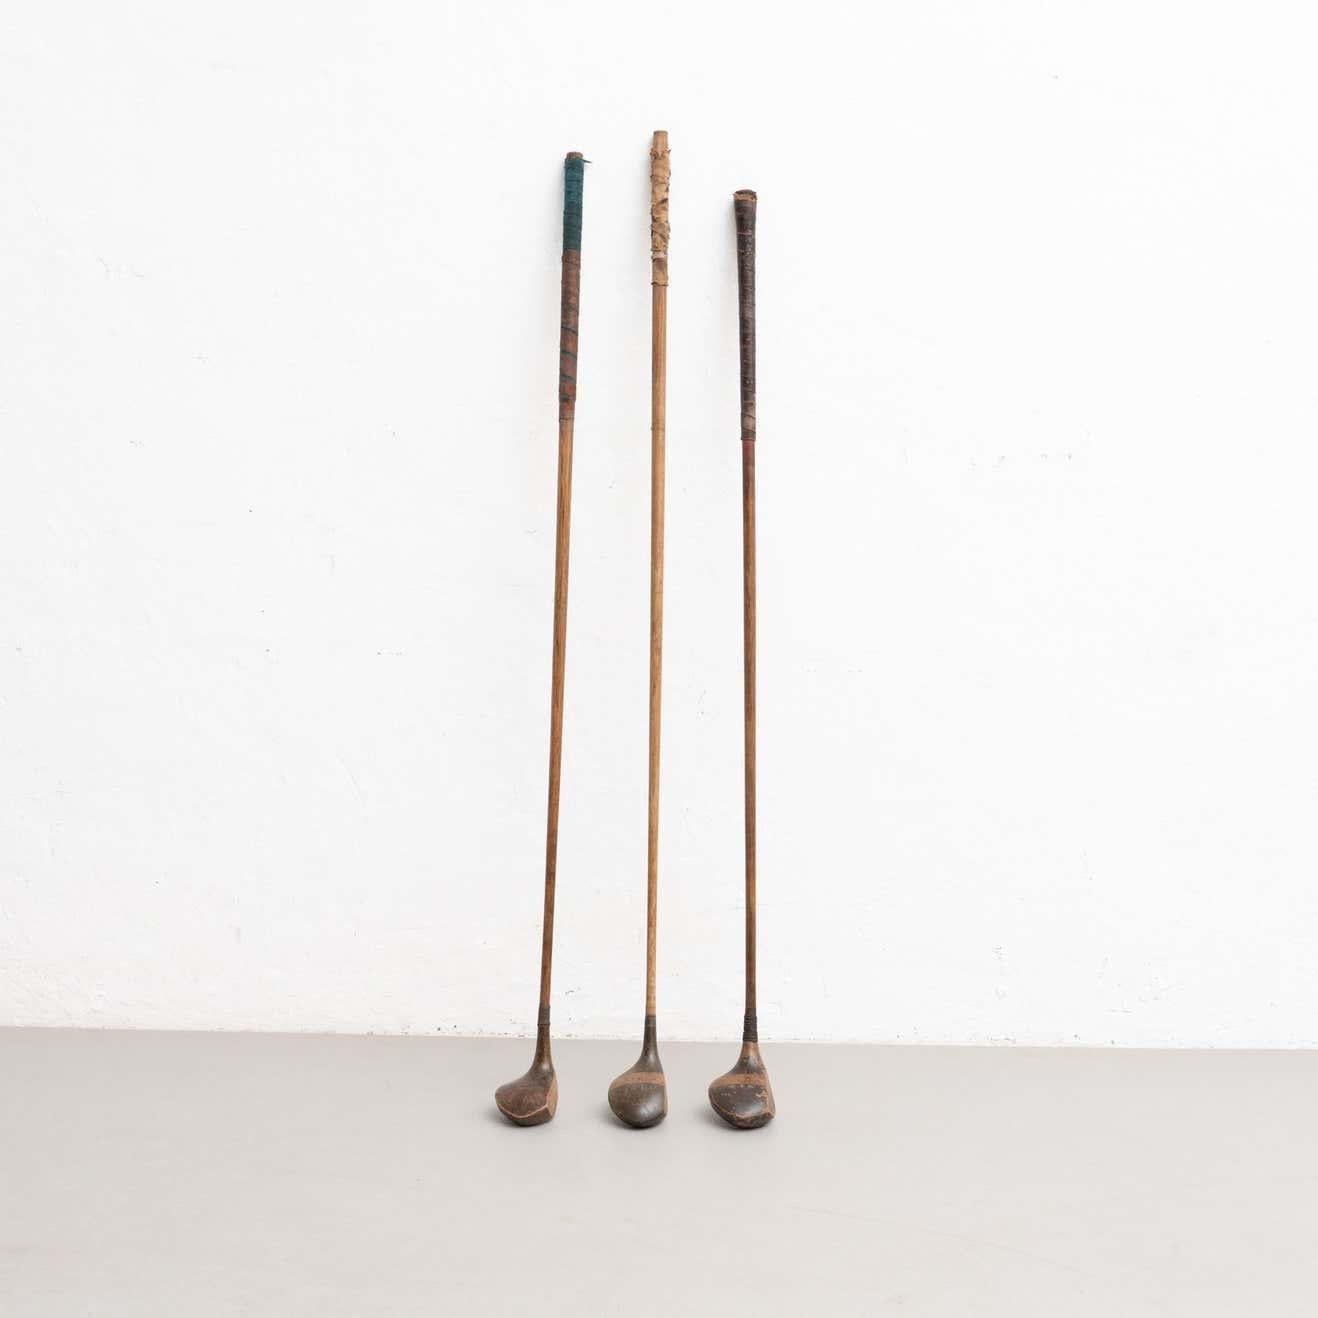 Satz von drei antiken traditionellen Jack Whiting's Sports Holz-Golfschlägern. 

Hergestellt in London, um 1930.

Originaler Zustand mit geringen alters- und gebrauchsbedingten Abnutzungserscheinungen, der eine schöne Patina